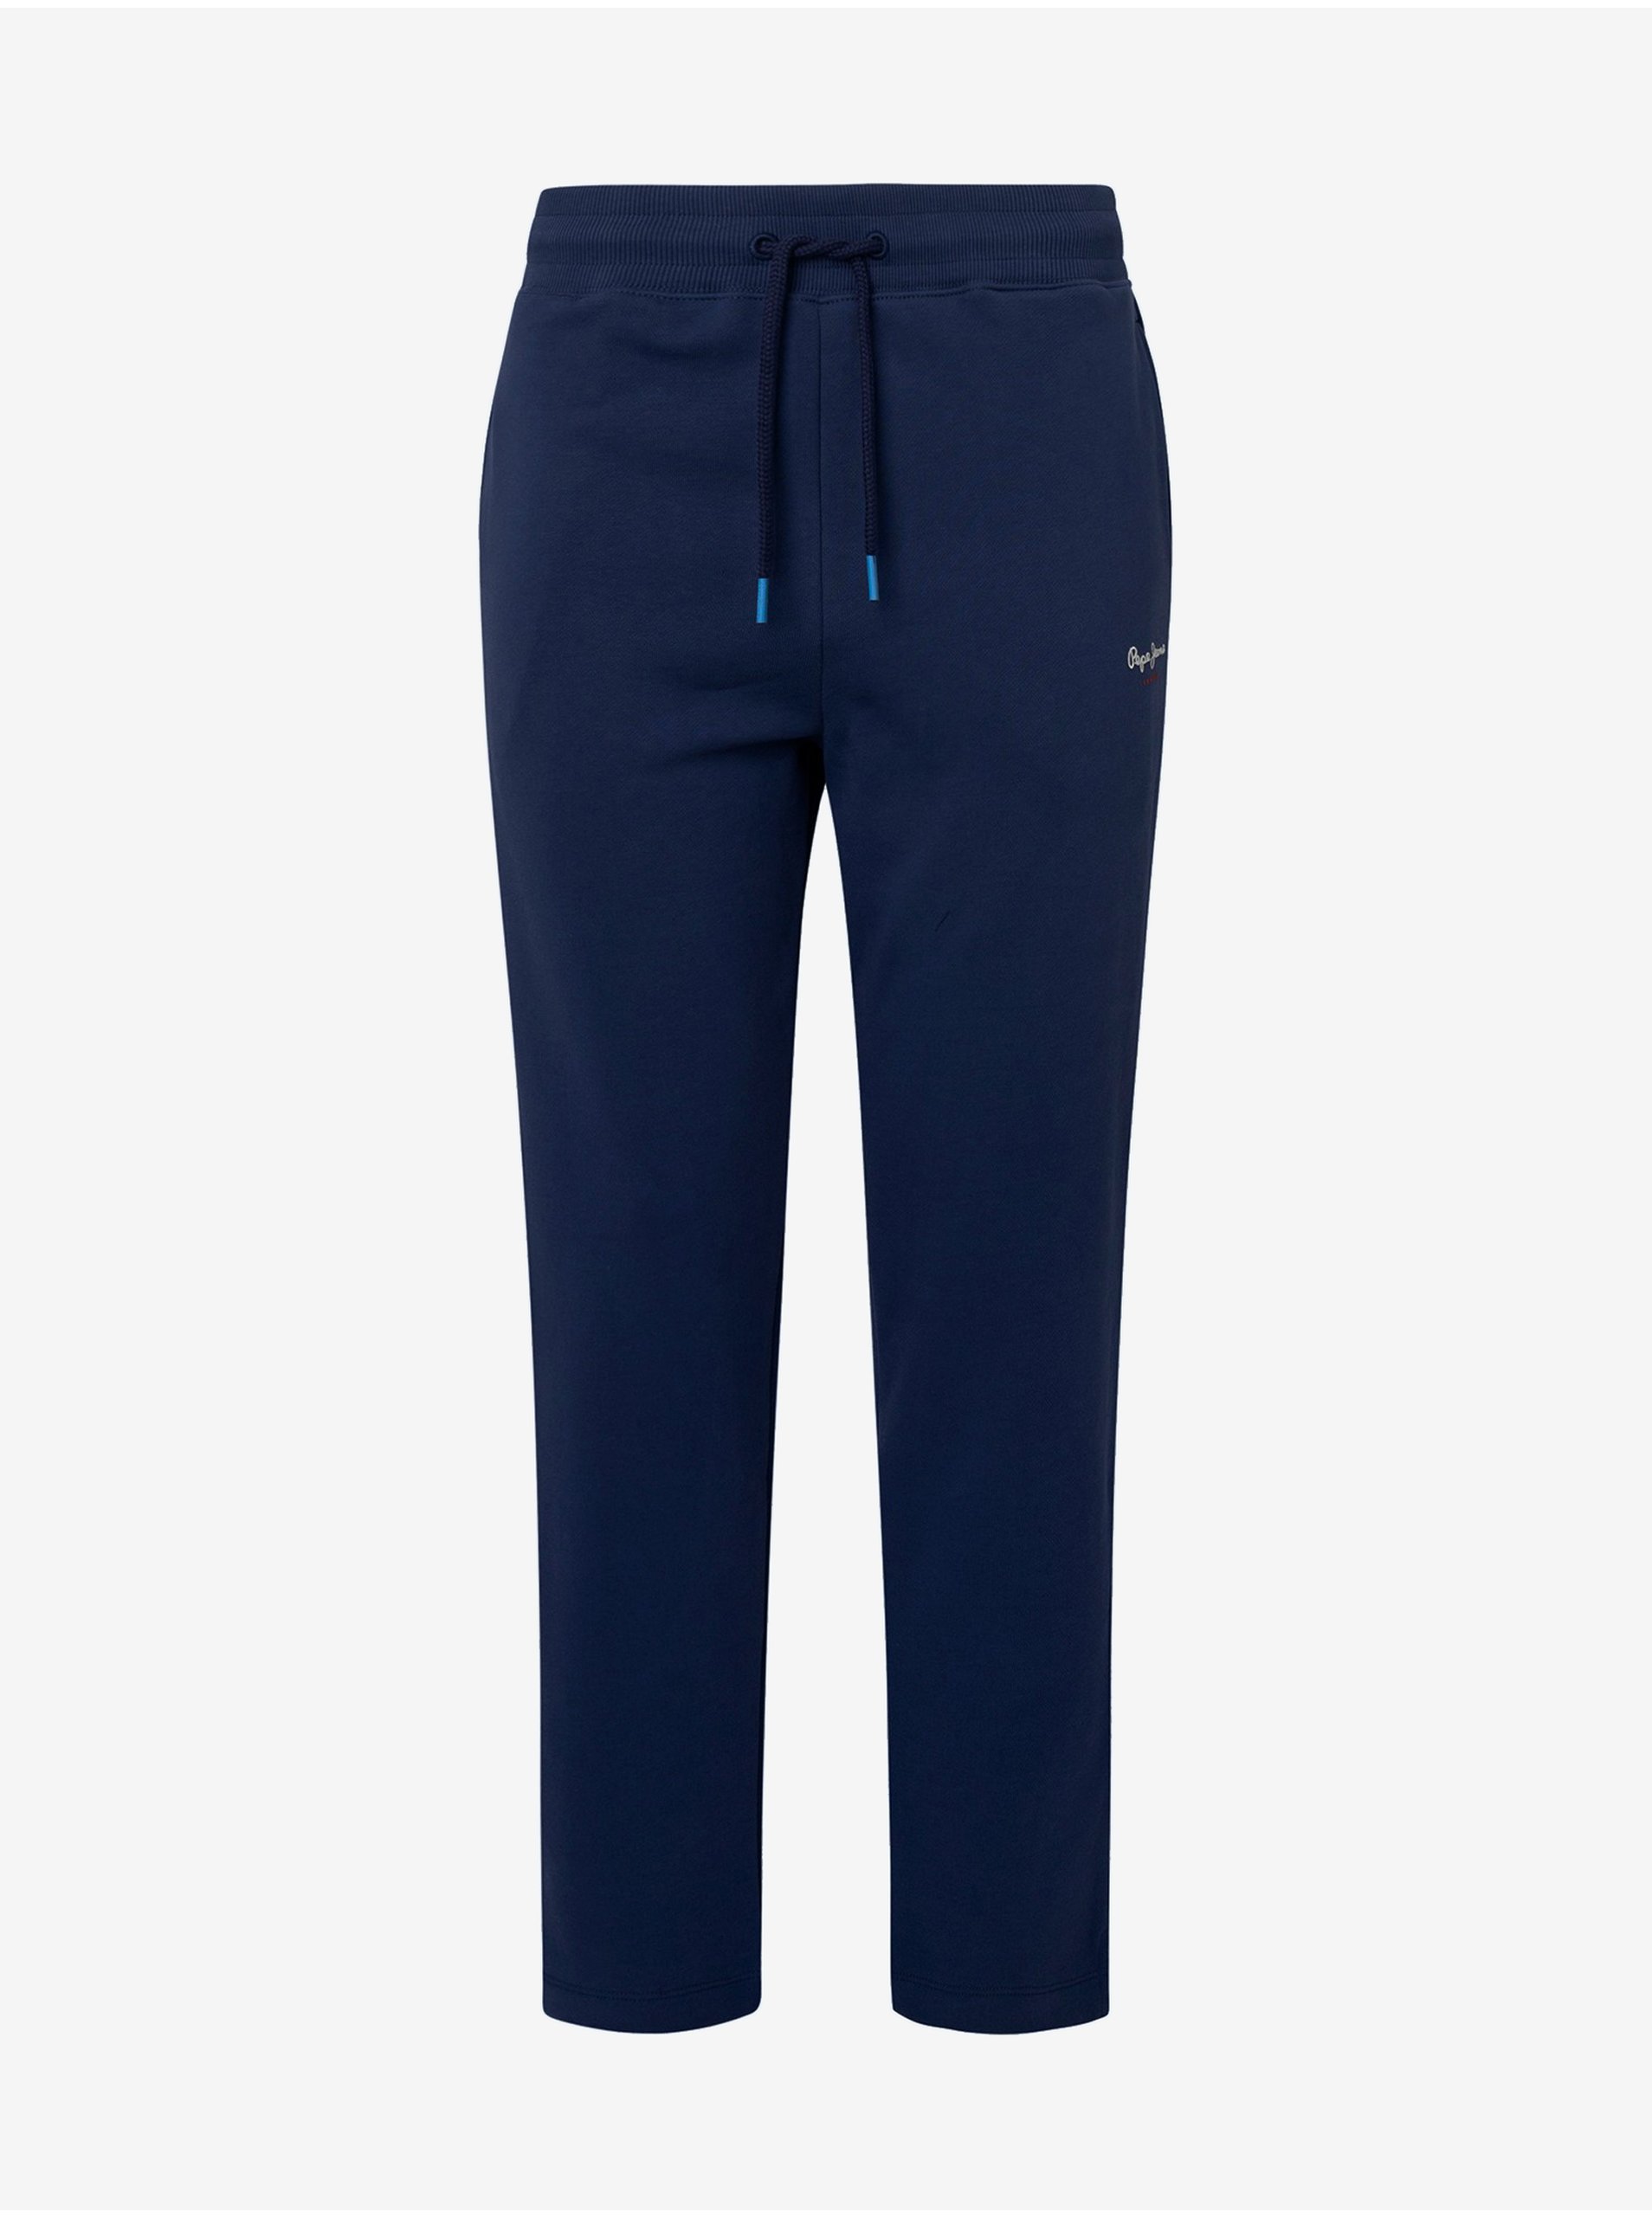 E-shop Tmavě modré dámské tepláky Pepe Jeans Calista